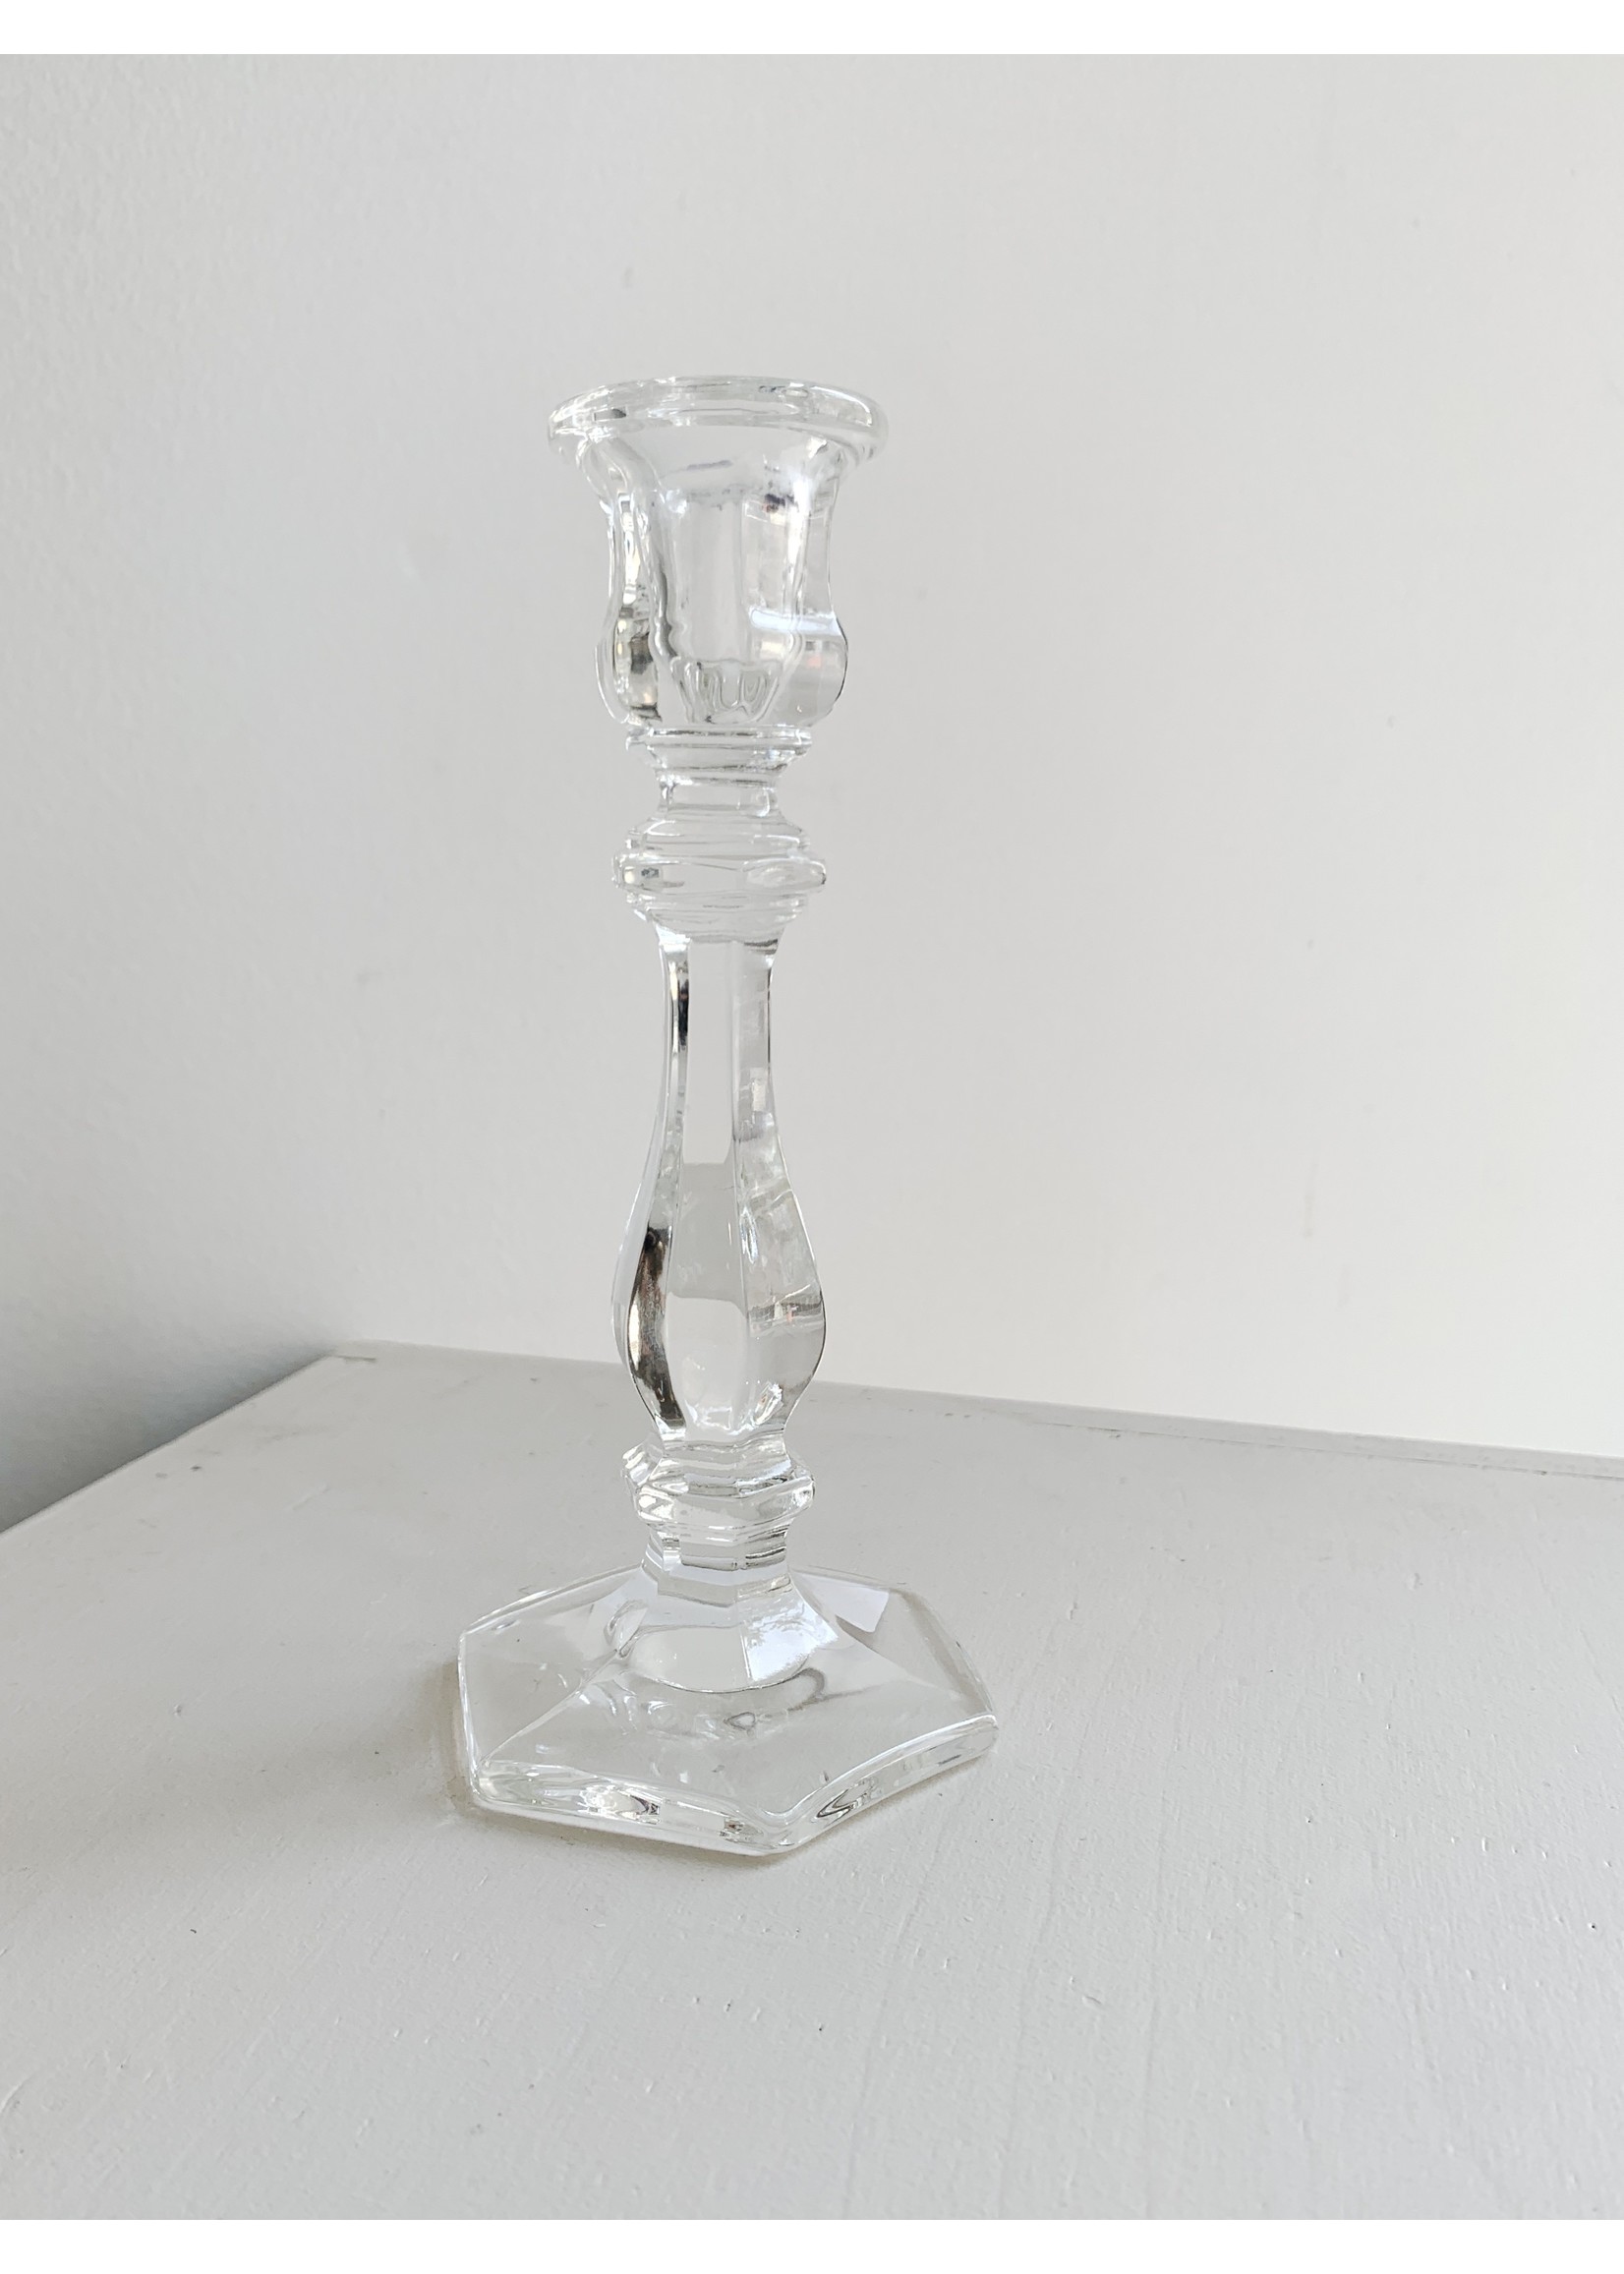 Mosser Glass Glass Candlesticks by Mosser